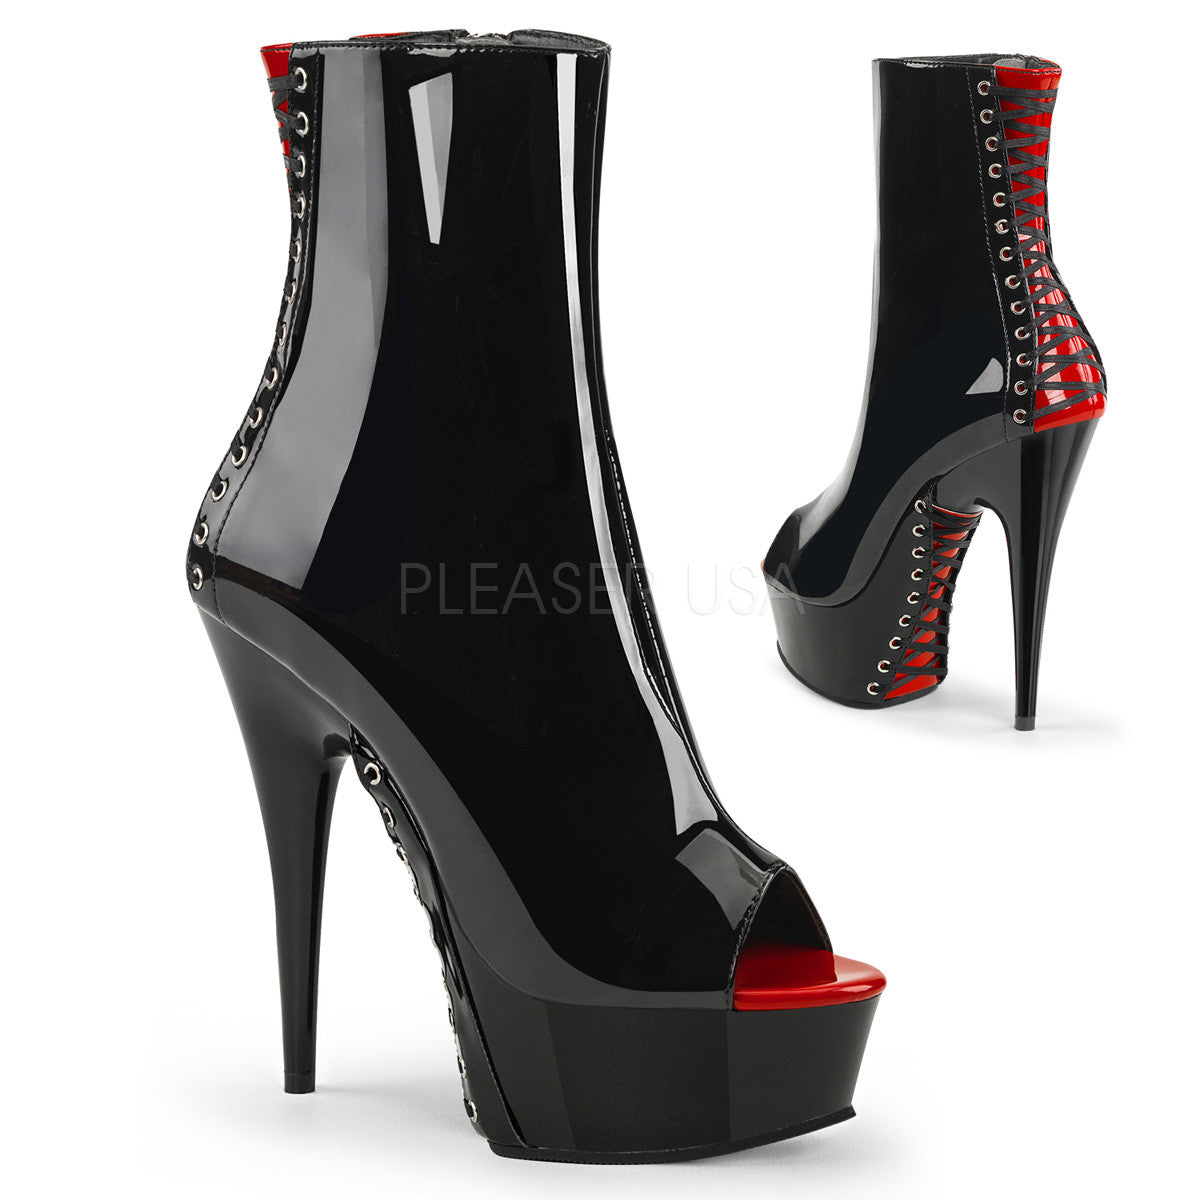 6" Heel DELIGHT-1025 Black Red Exotic Dancing Shoes